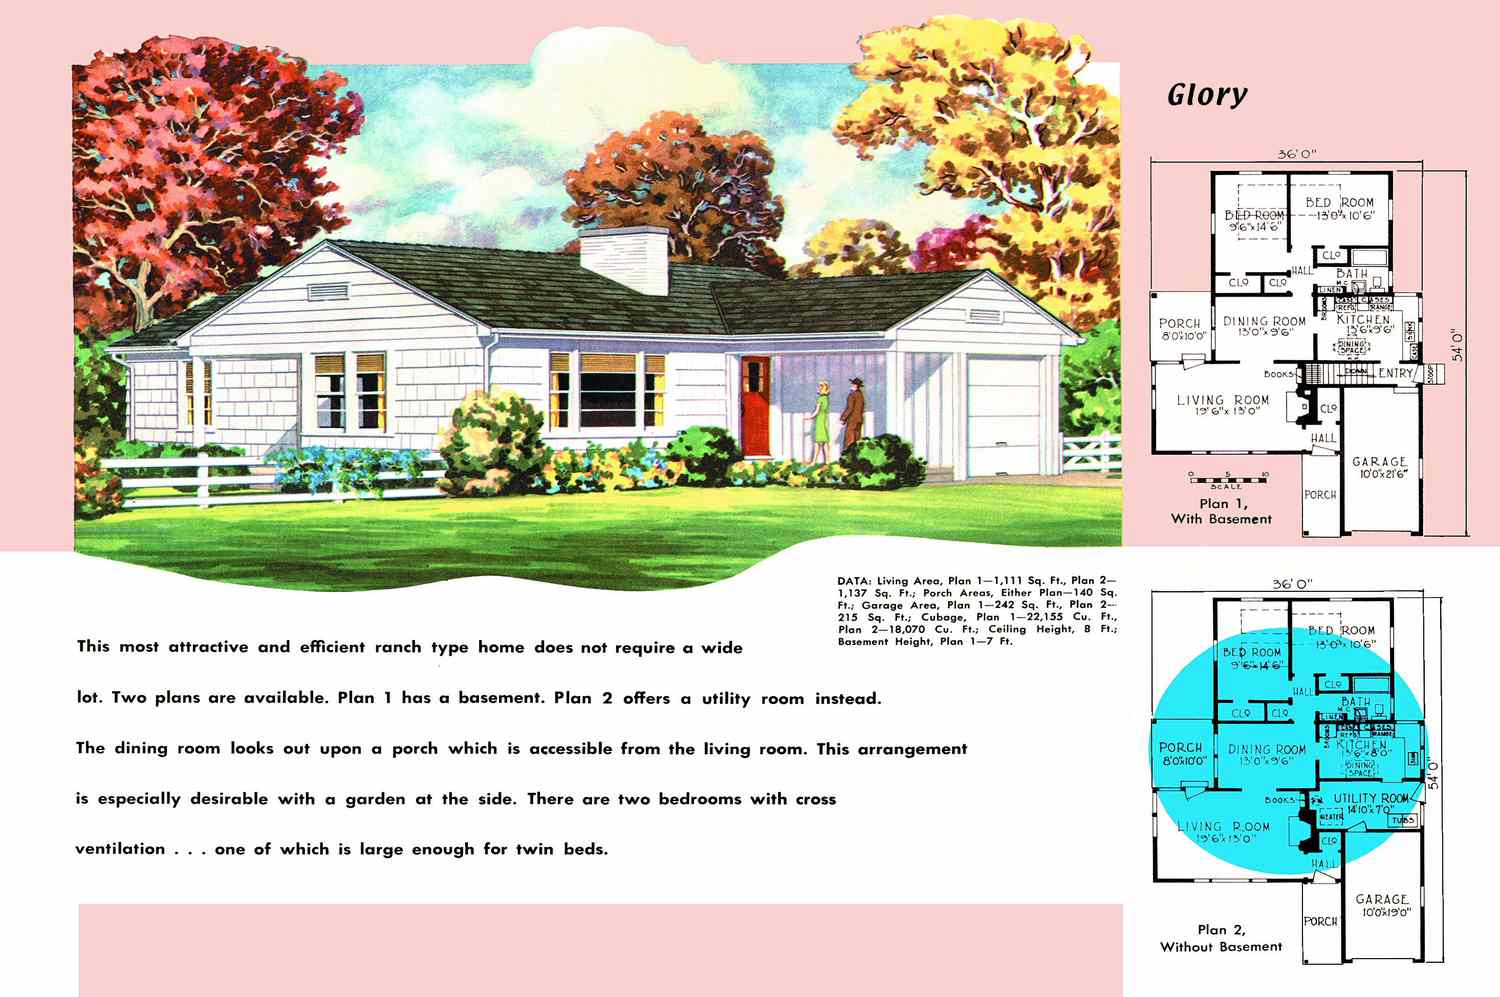 Plano y render de una casa estilo rancho de los años 50 llamada Glory